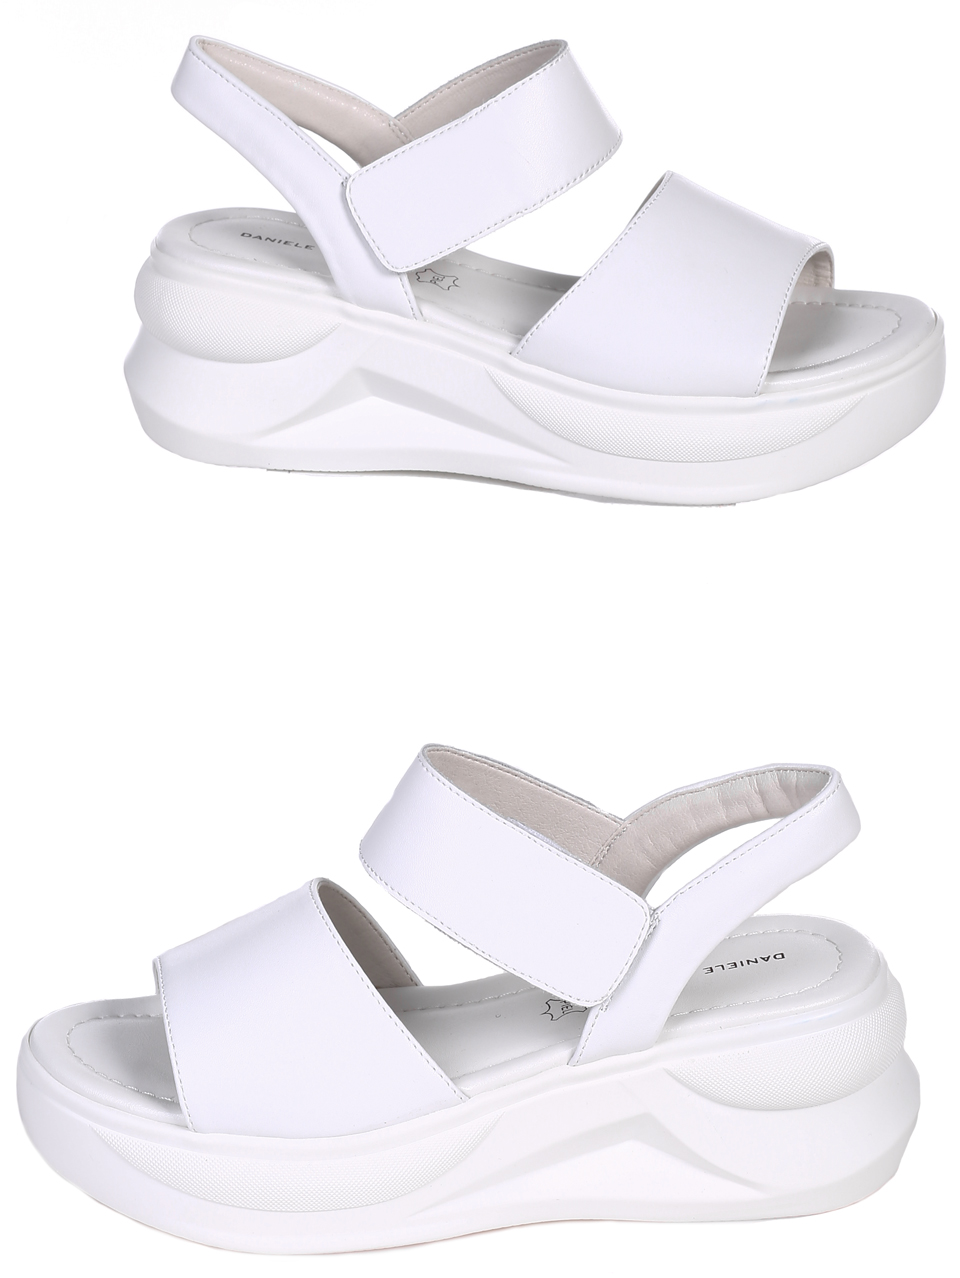 Ежедневни дамски сандали на платформа от естествена кожа 4AF-22188 white